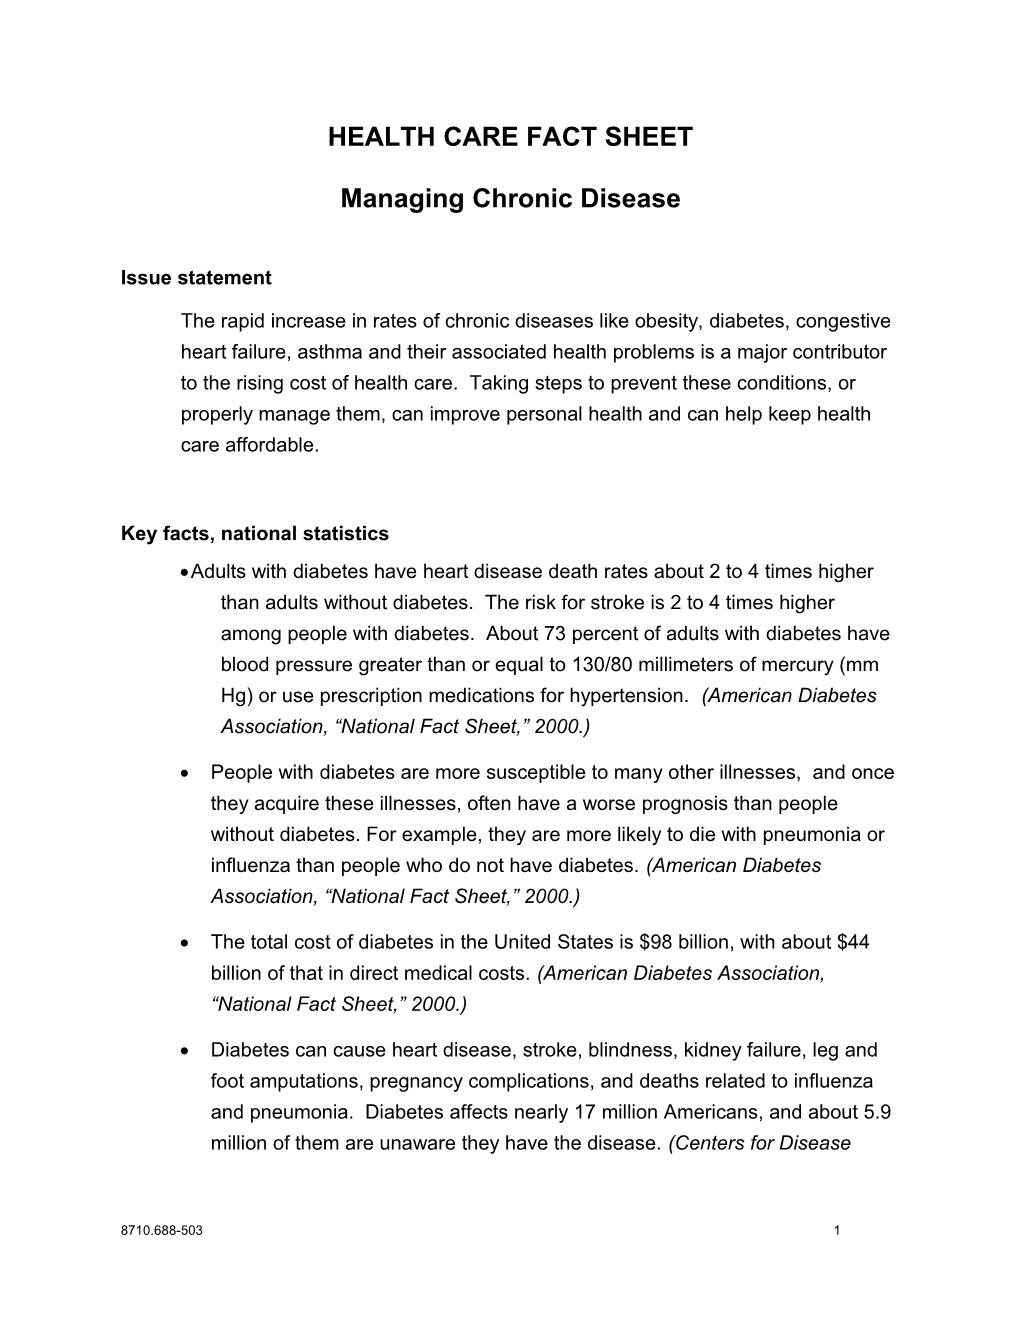 Fact Sheet: Effectively Manage Chronic Disease